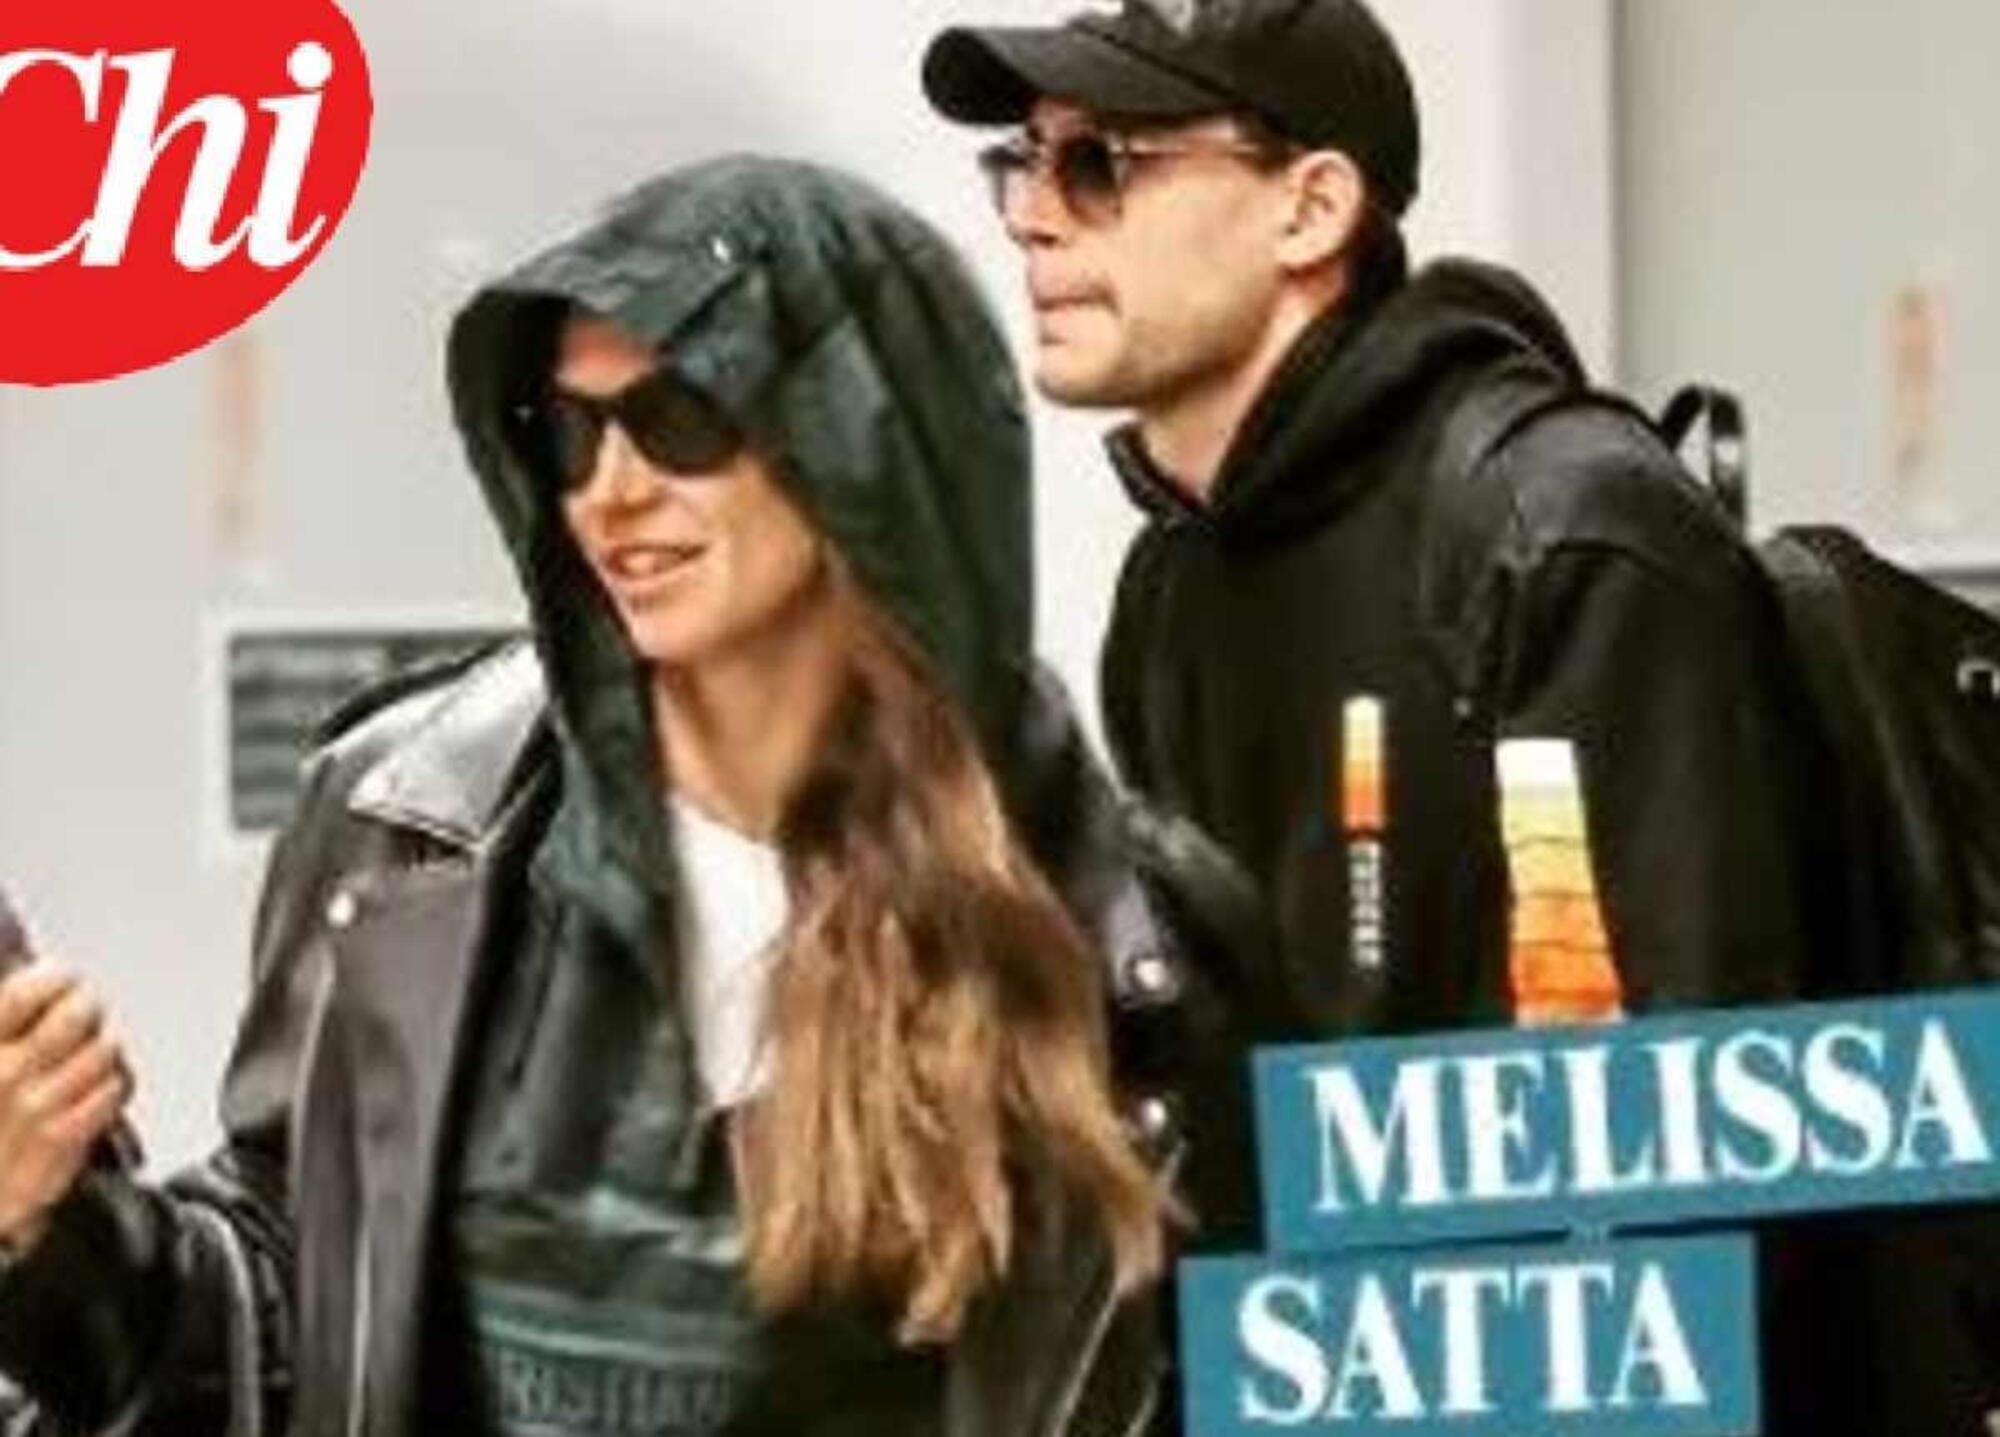 Melissa Satta paparazzata con Carlo Gussalli Beretta